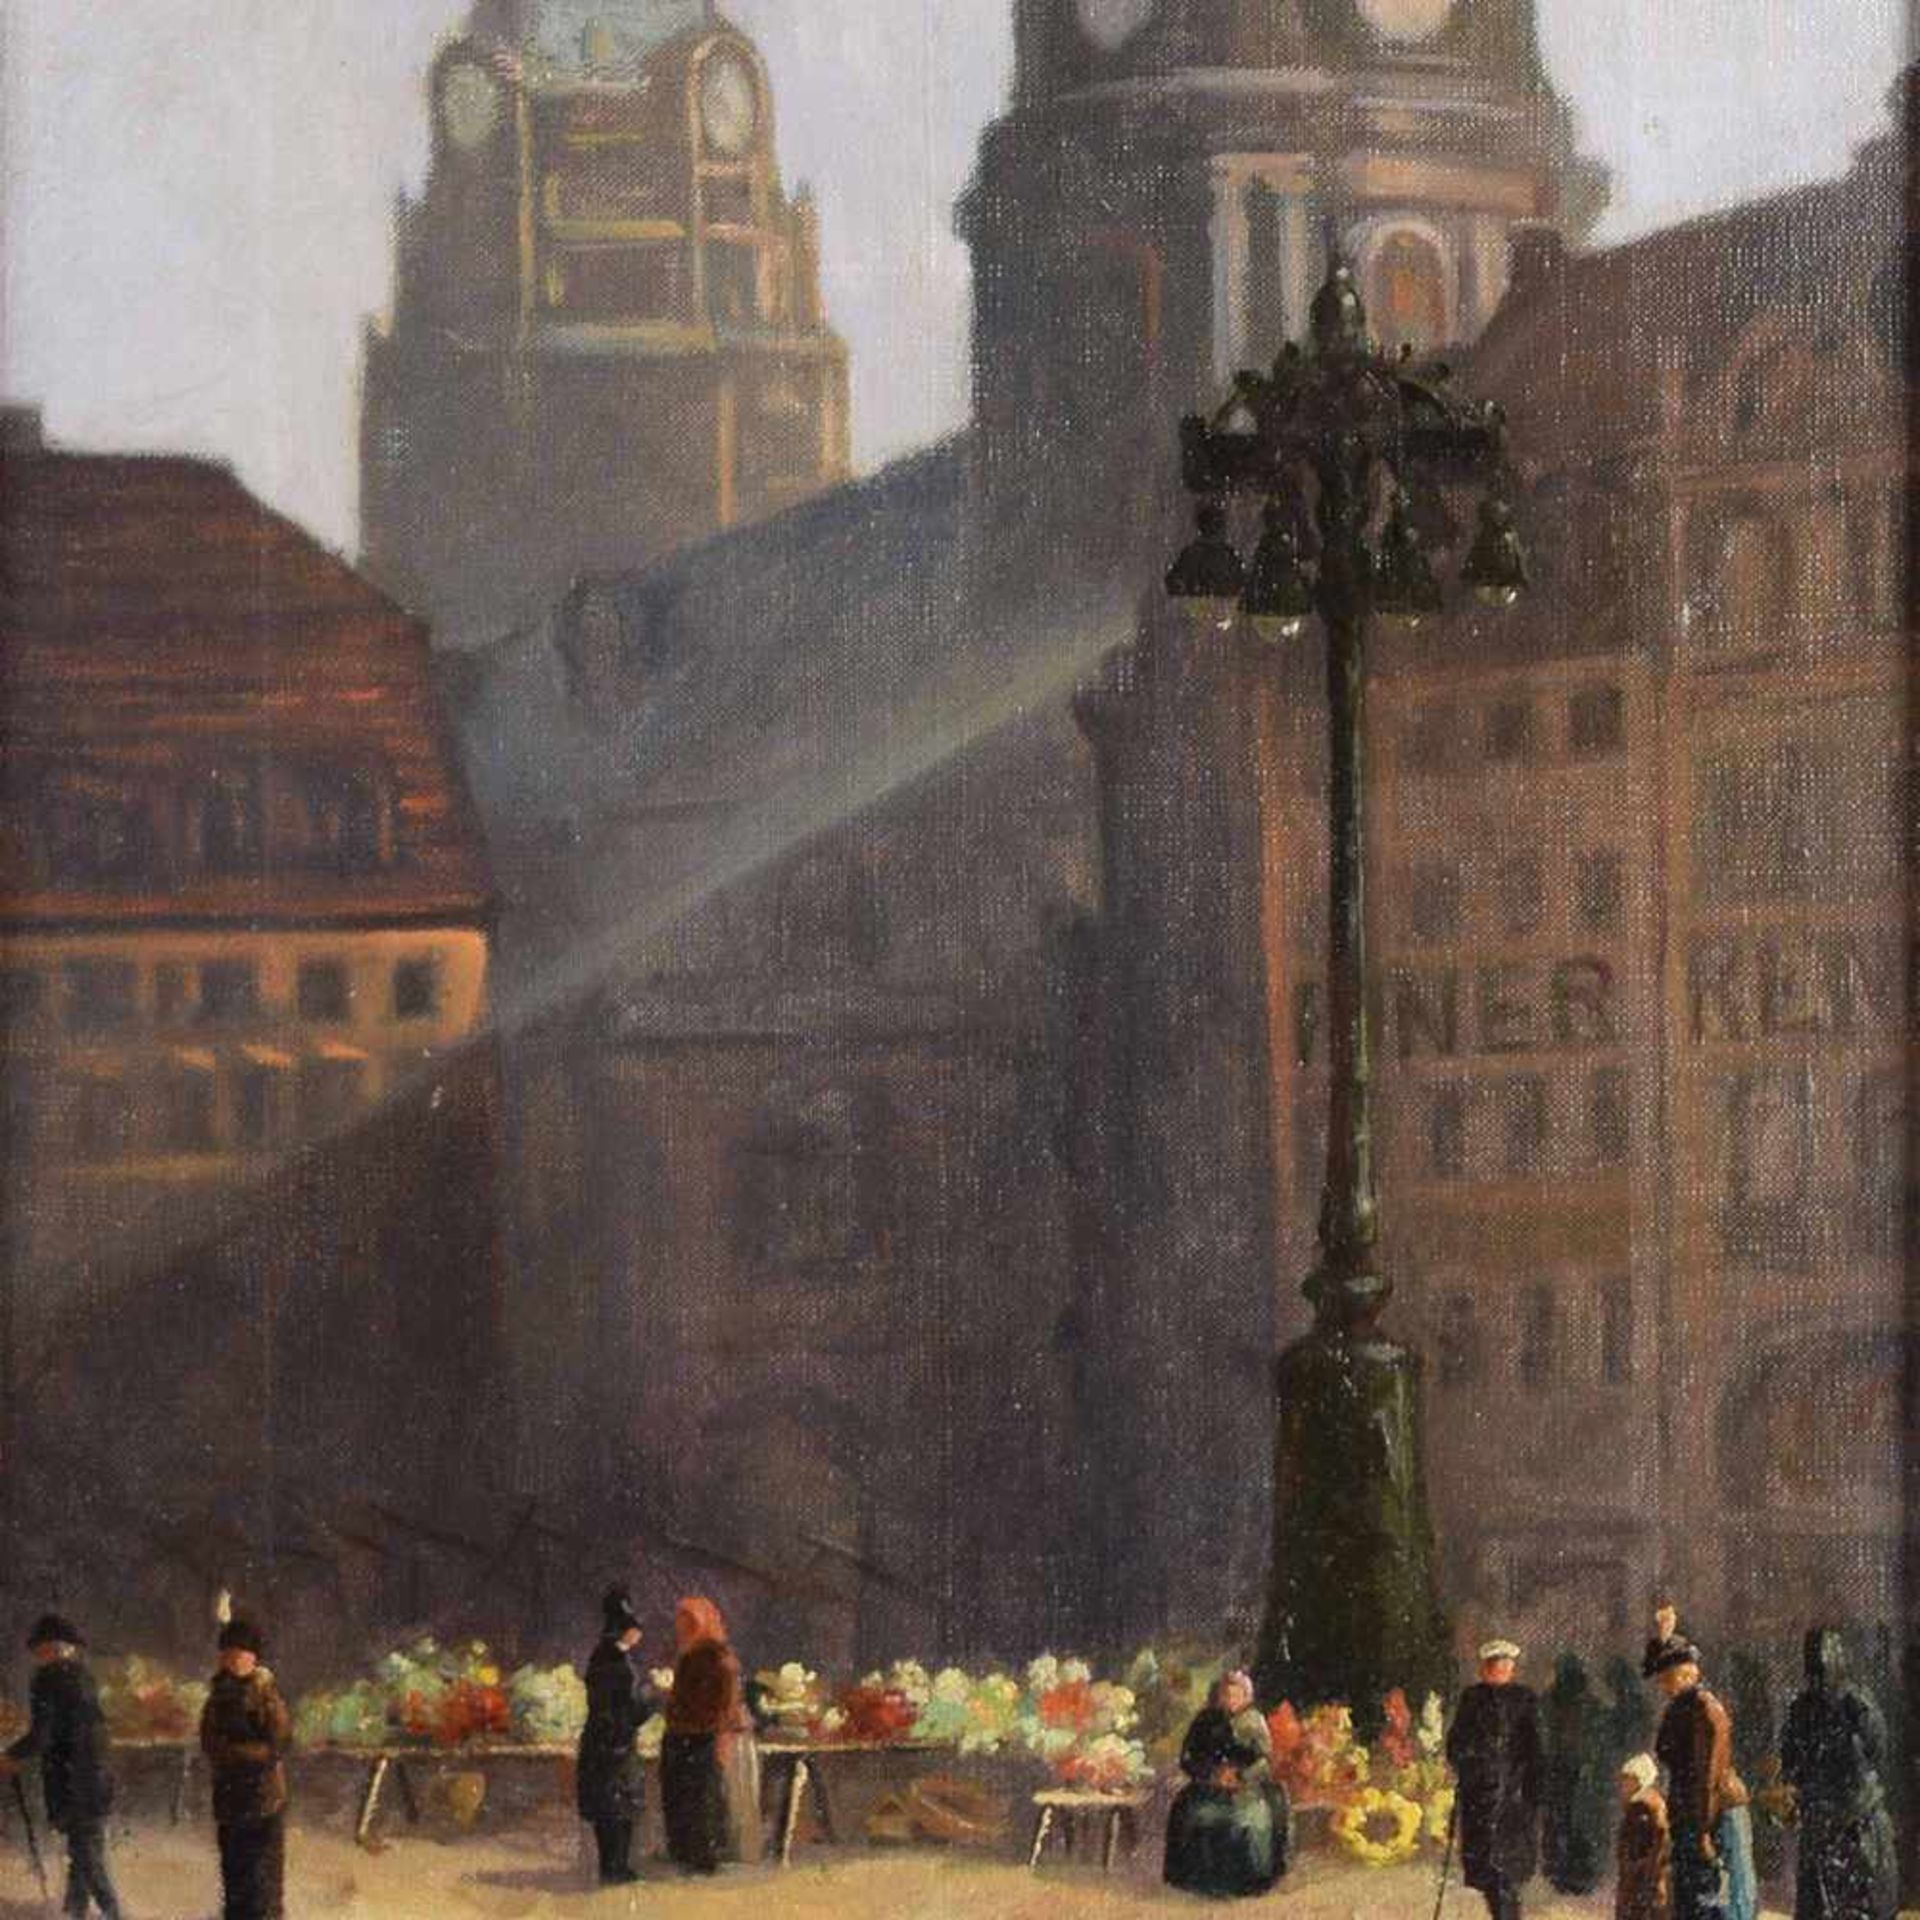 Unbekannter Künstler Öl/Lwd., Dresden-Ansicht mit Blumenmarkt vor Altstadtkulisse, gerahmt, ca. 57 x